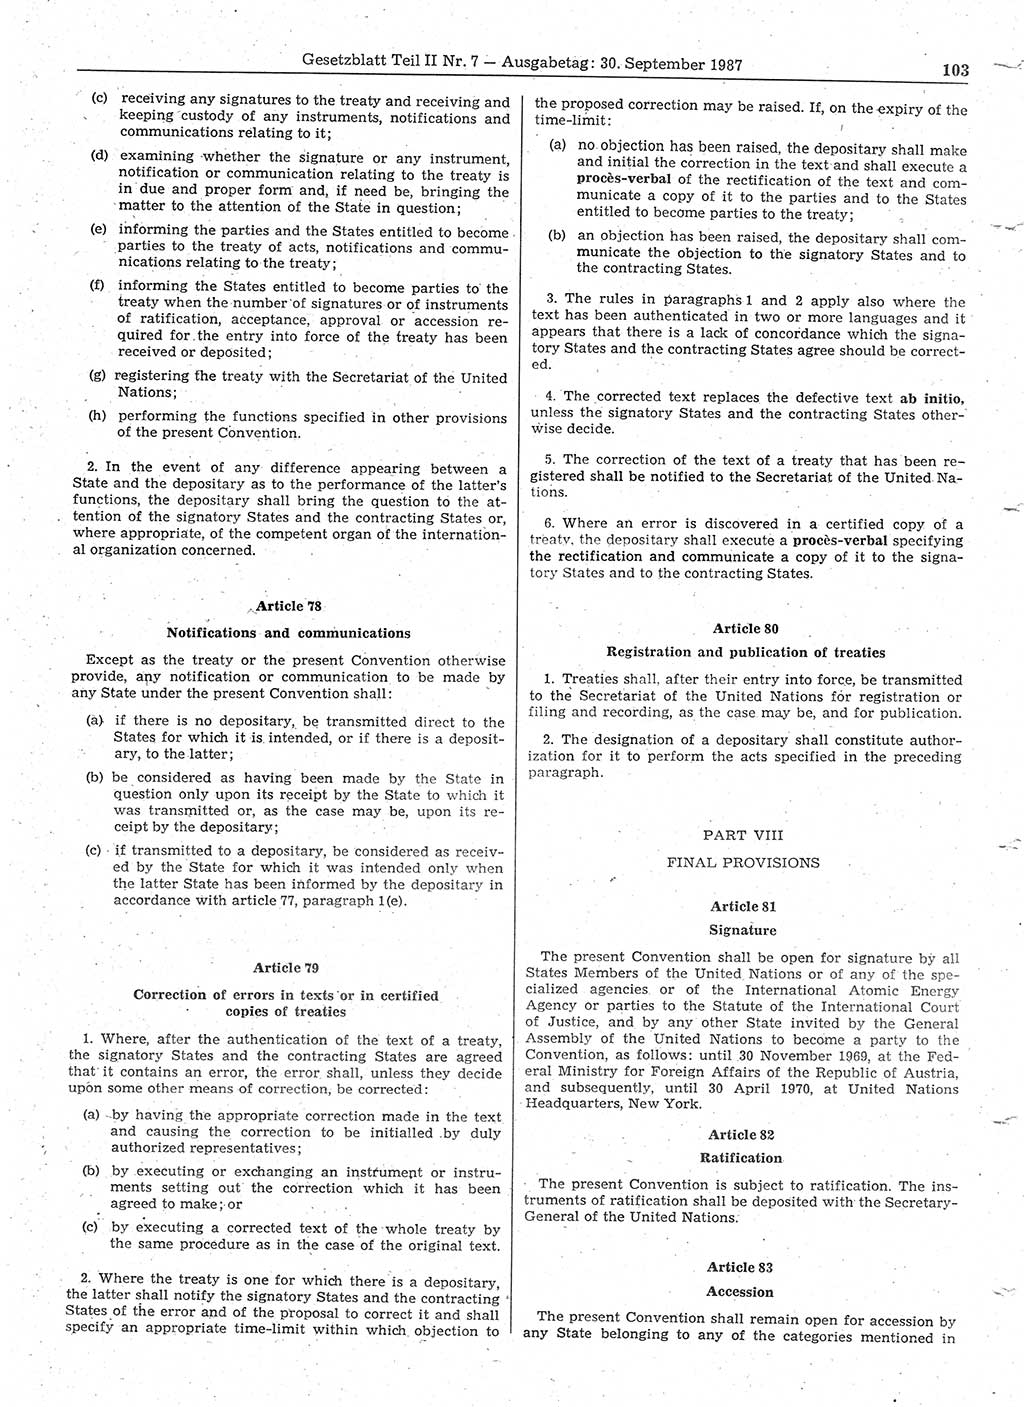 Gesetzblatt (GBl.) der Deutschen Demokratischen Republik (DDR) Teil ⅠⅠ 1987, Seite 103 (GBl. DDR ⅠⅠ 1987, S. 103)